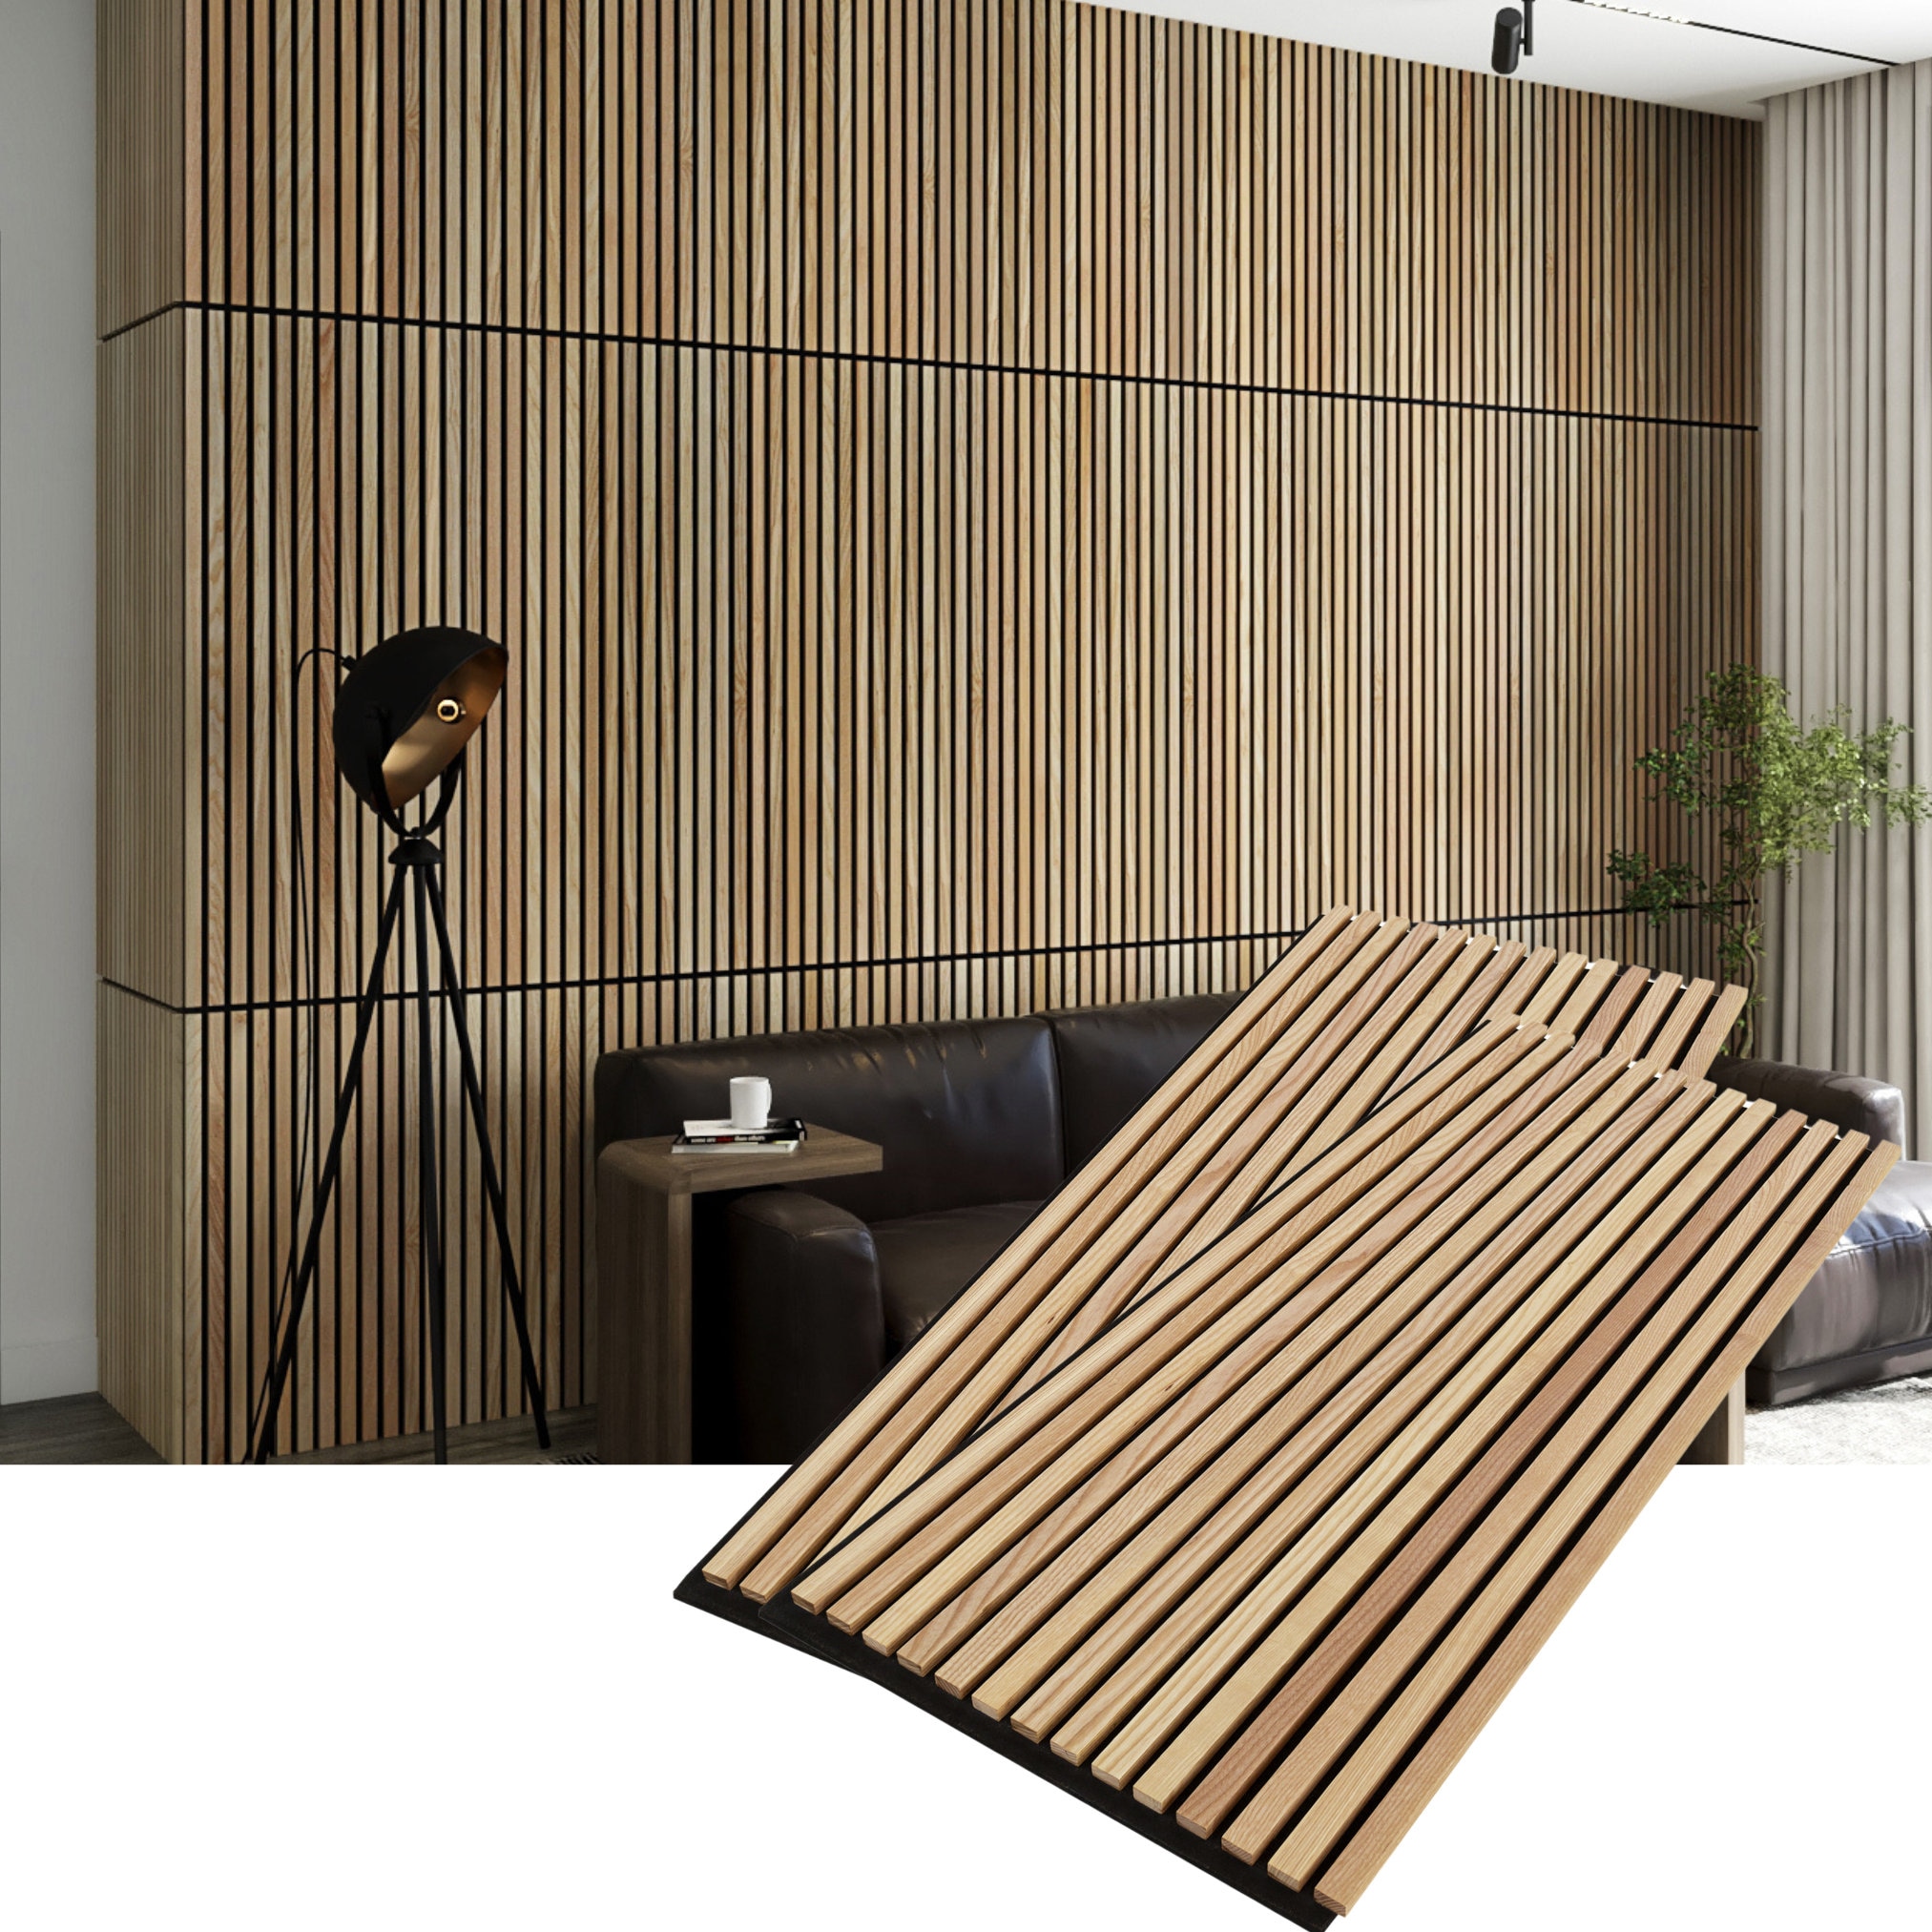  WoodyWalls - Tablones de madera recuperada para paredes,  paneles de pared de madera para decoración de paredes interiores, paneles  de madera para detalles de pared, cada tablón de madera es único, 